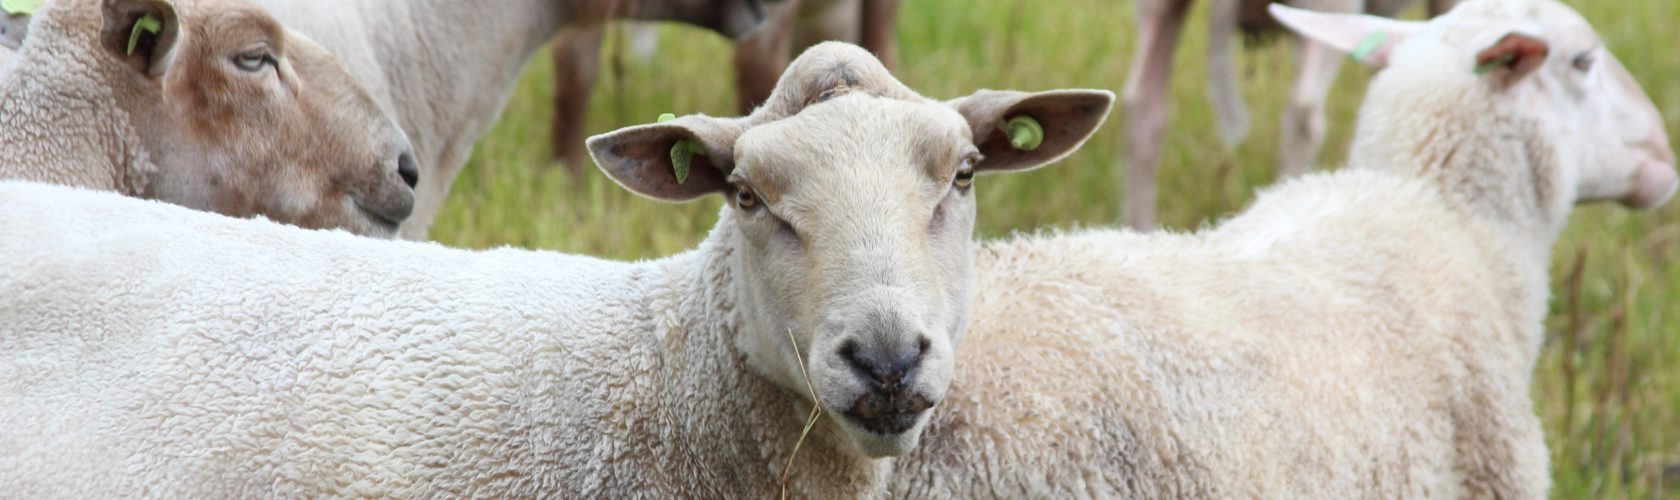 beeld schapen in de wei